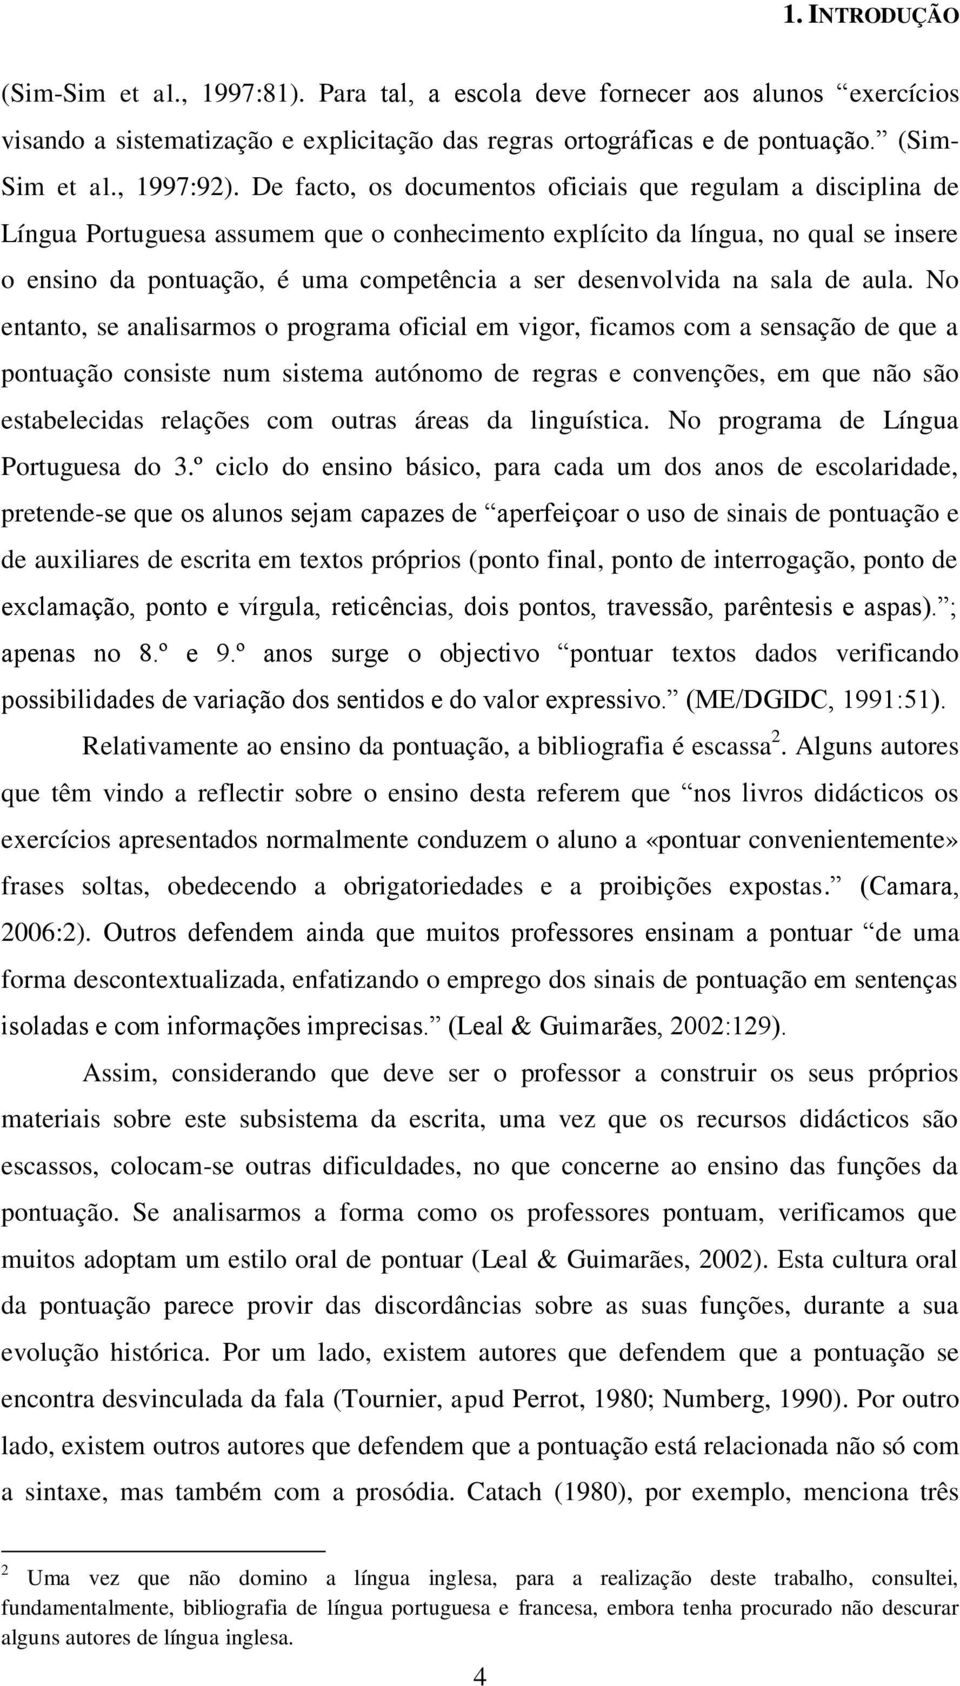 De facto, os documentos oficiais que regulam a disciplina de Língua Portuguesa assumem que o conhecimento explícito da língua, no qual se insere o ensino da pontuação, é uma competência a ser